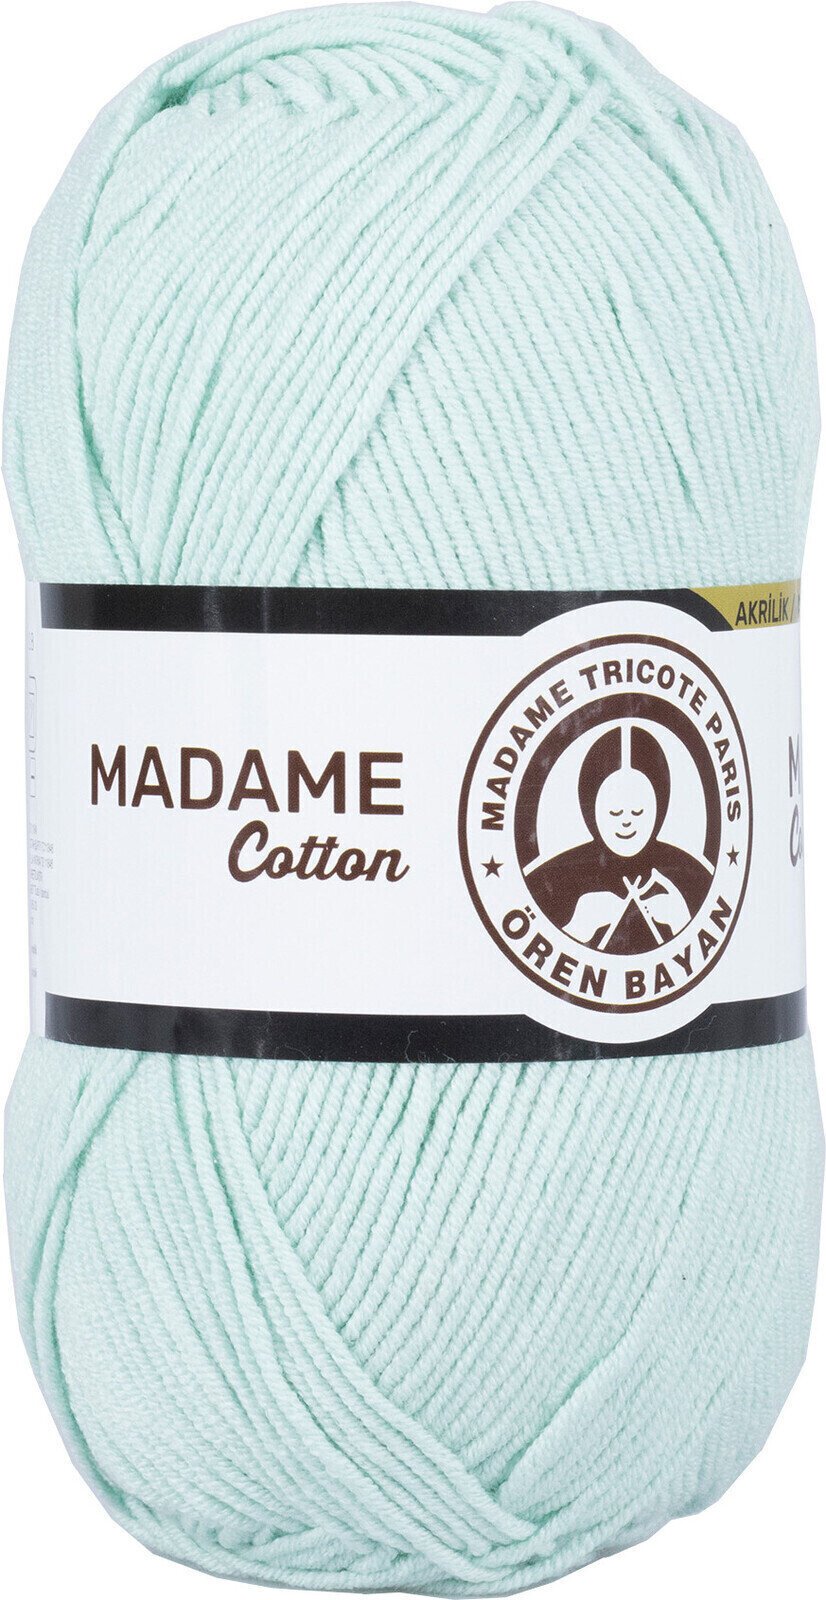 Stickgarn Madame Tricote Paris Madame Cotton Stickgarn 017 Pastel Green